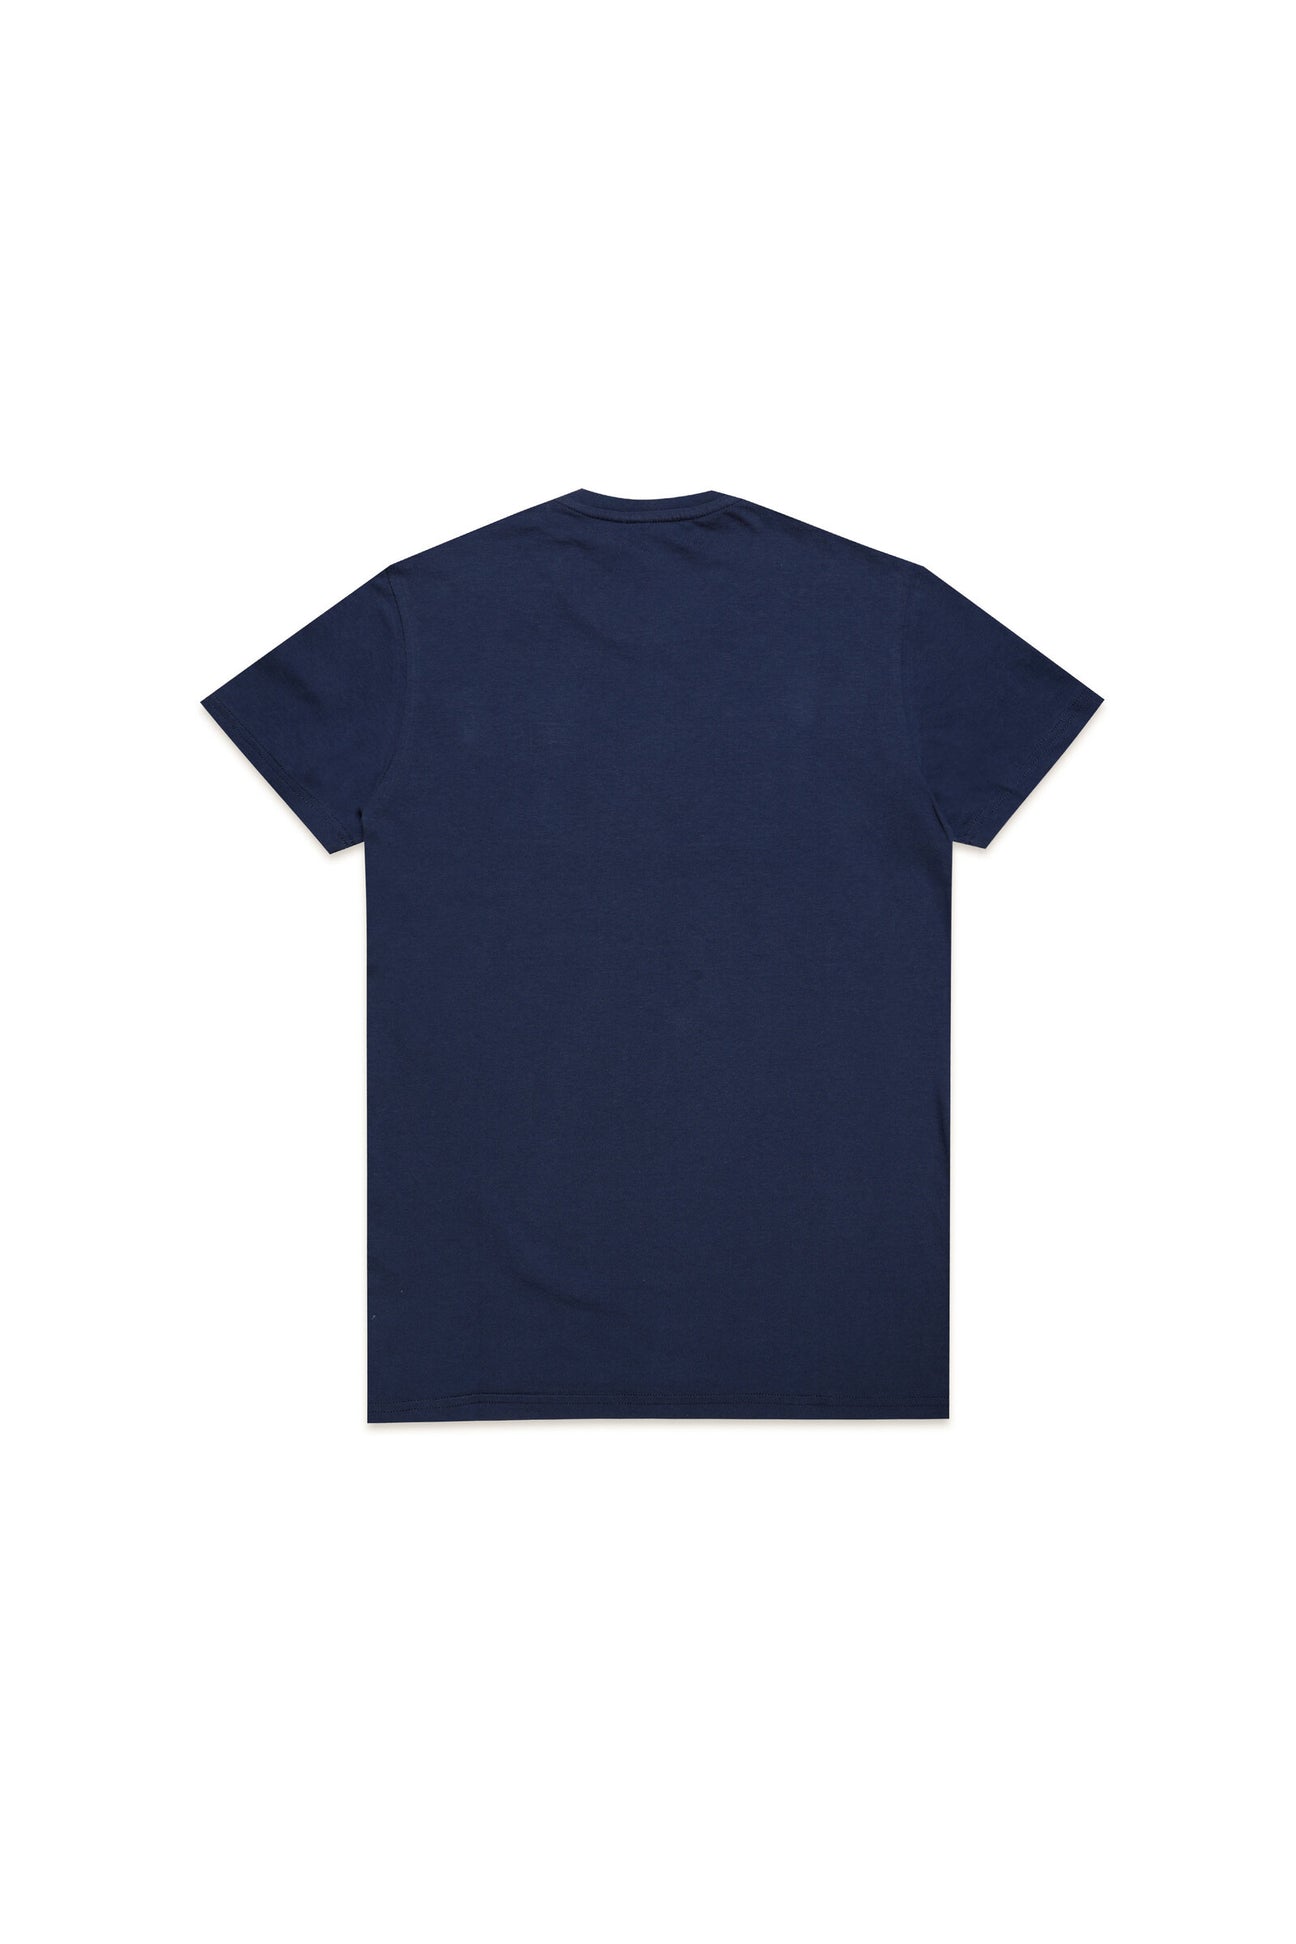 Camiseta azul con aplicación del logotipo Diesel Camiseta azul con aplicación del logotipo Diesel